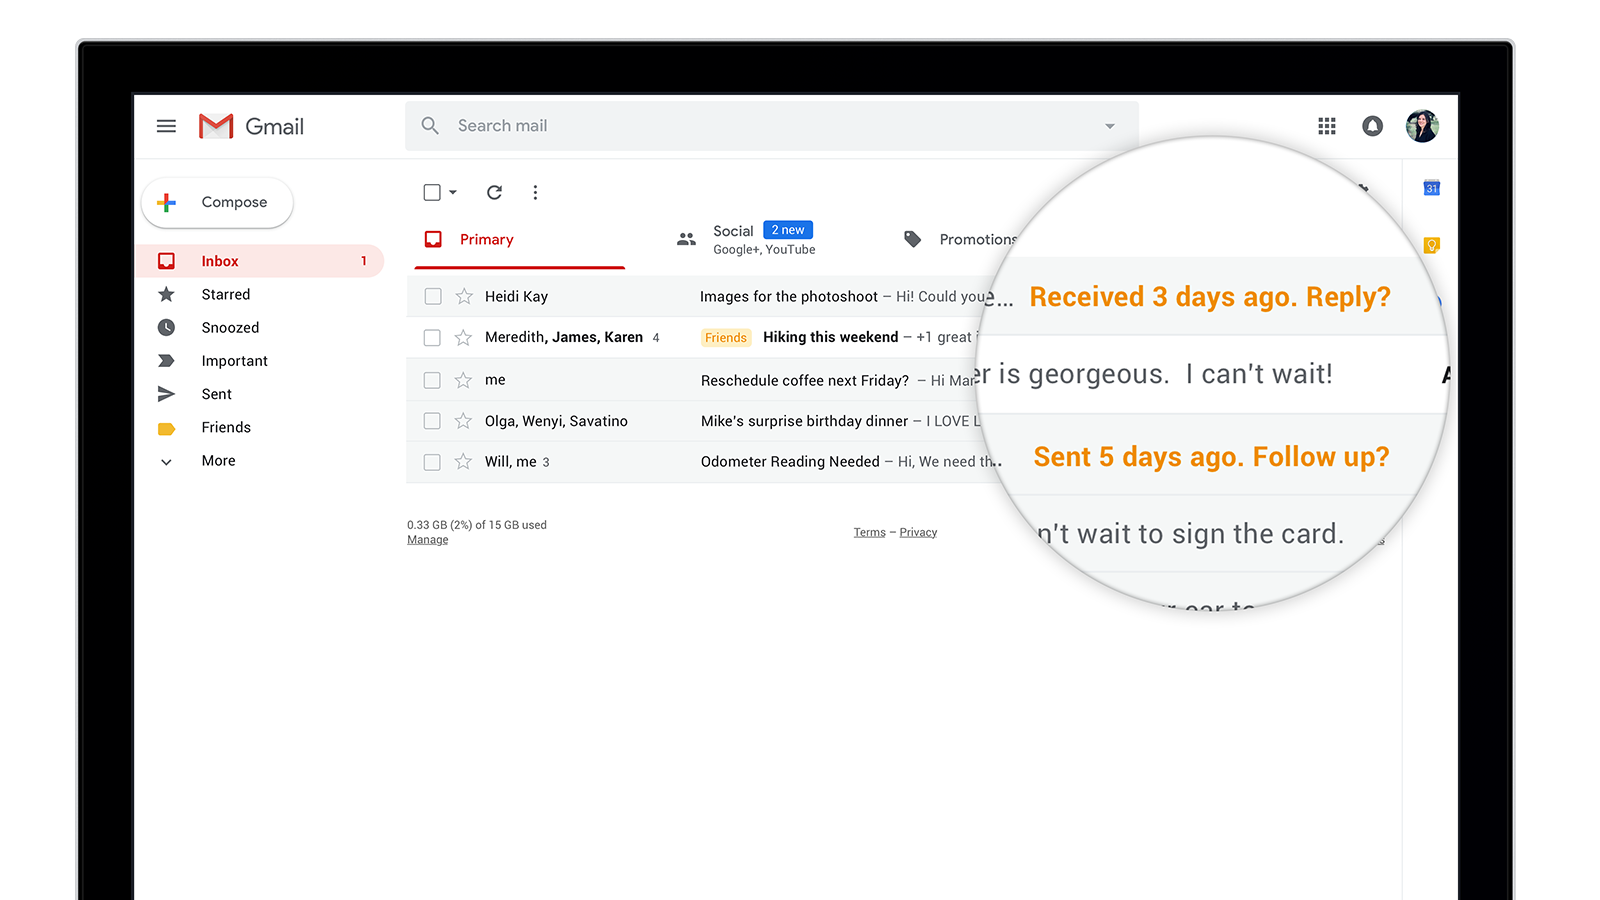 Честное слово - Inbox от Gmail так хорошо работает как в браузере, так и на мобильных устройствах - на планшете, смартфоне и даже в «умных часах» - так что вы не хотите прекращать его использовать